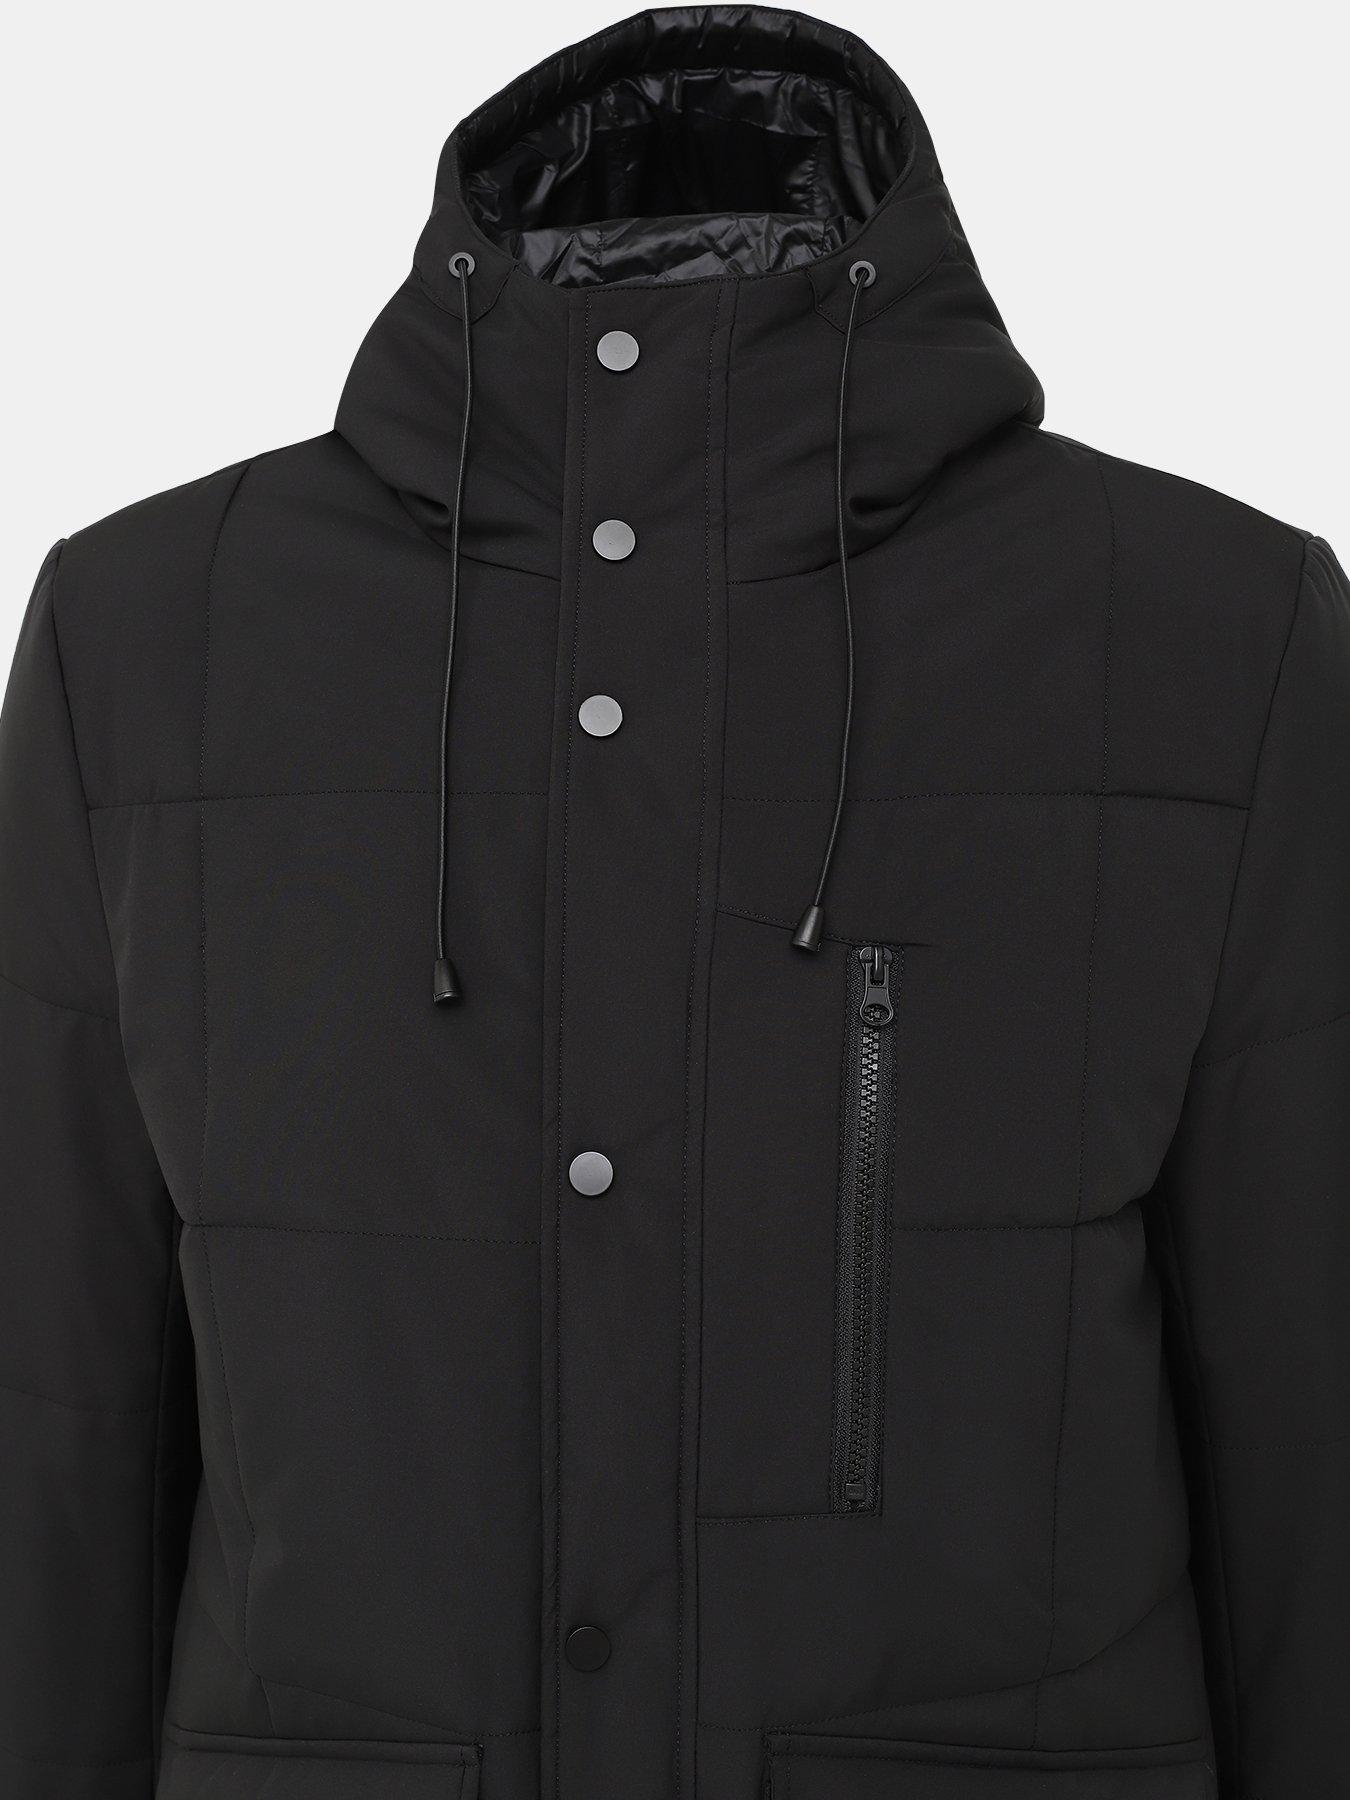 Удлиненная куртка Ritter 385246-027, цвет черный, размер 52 - фото 4